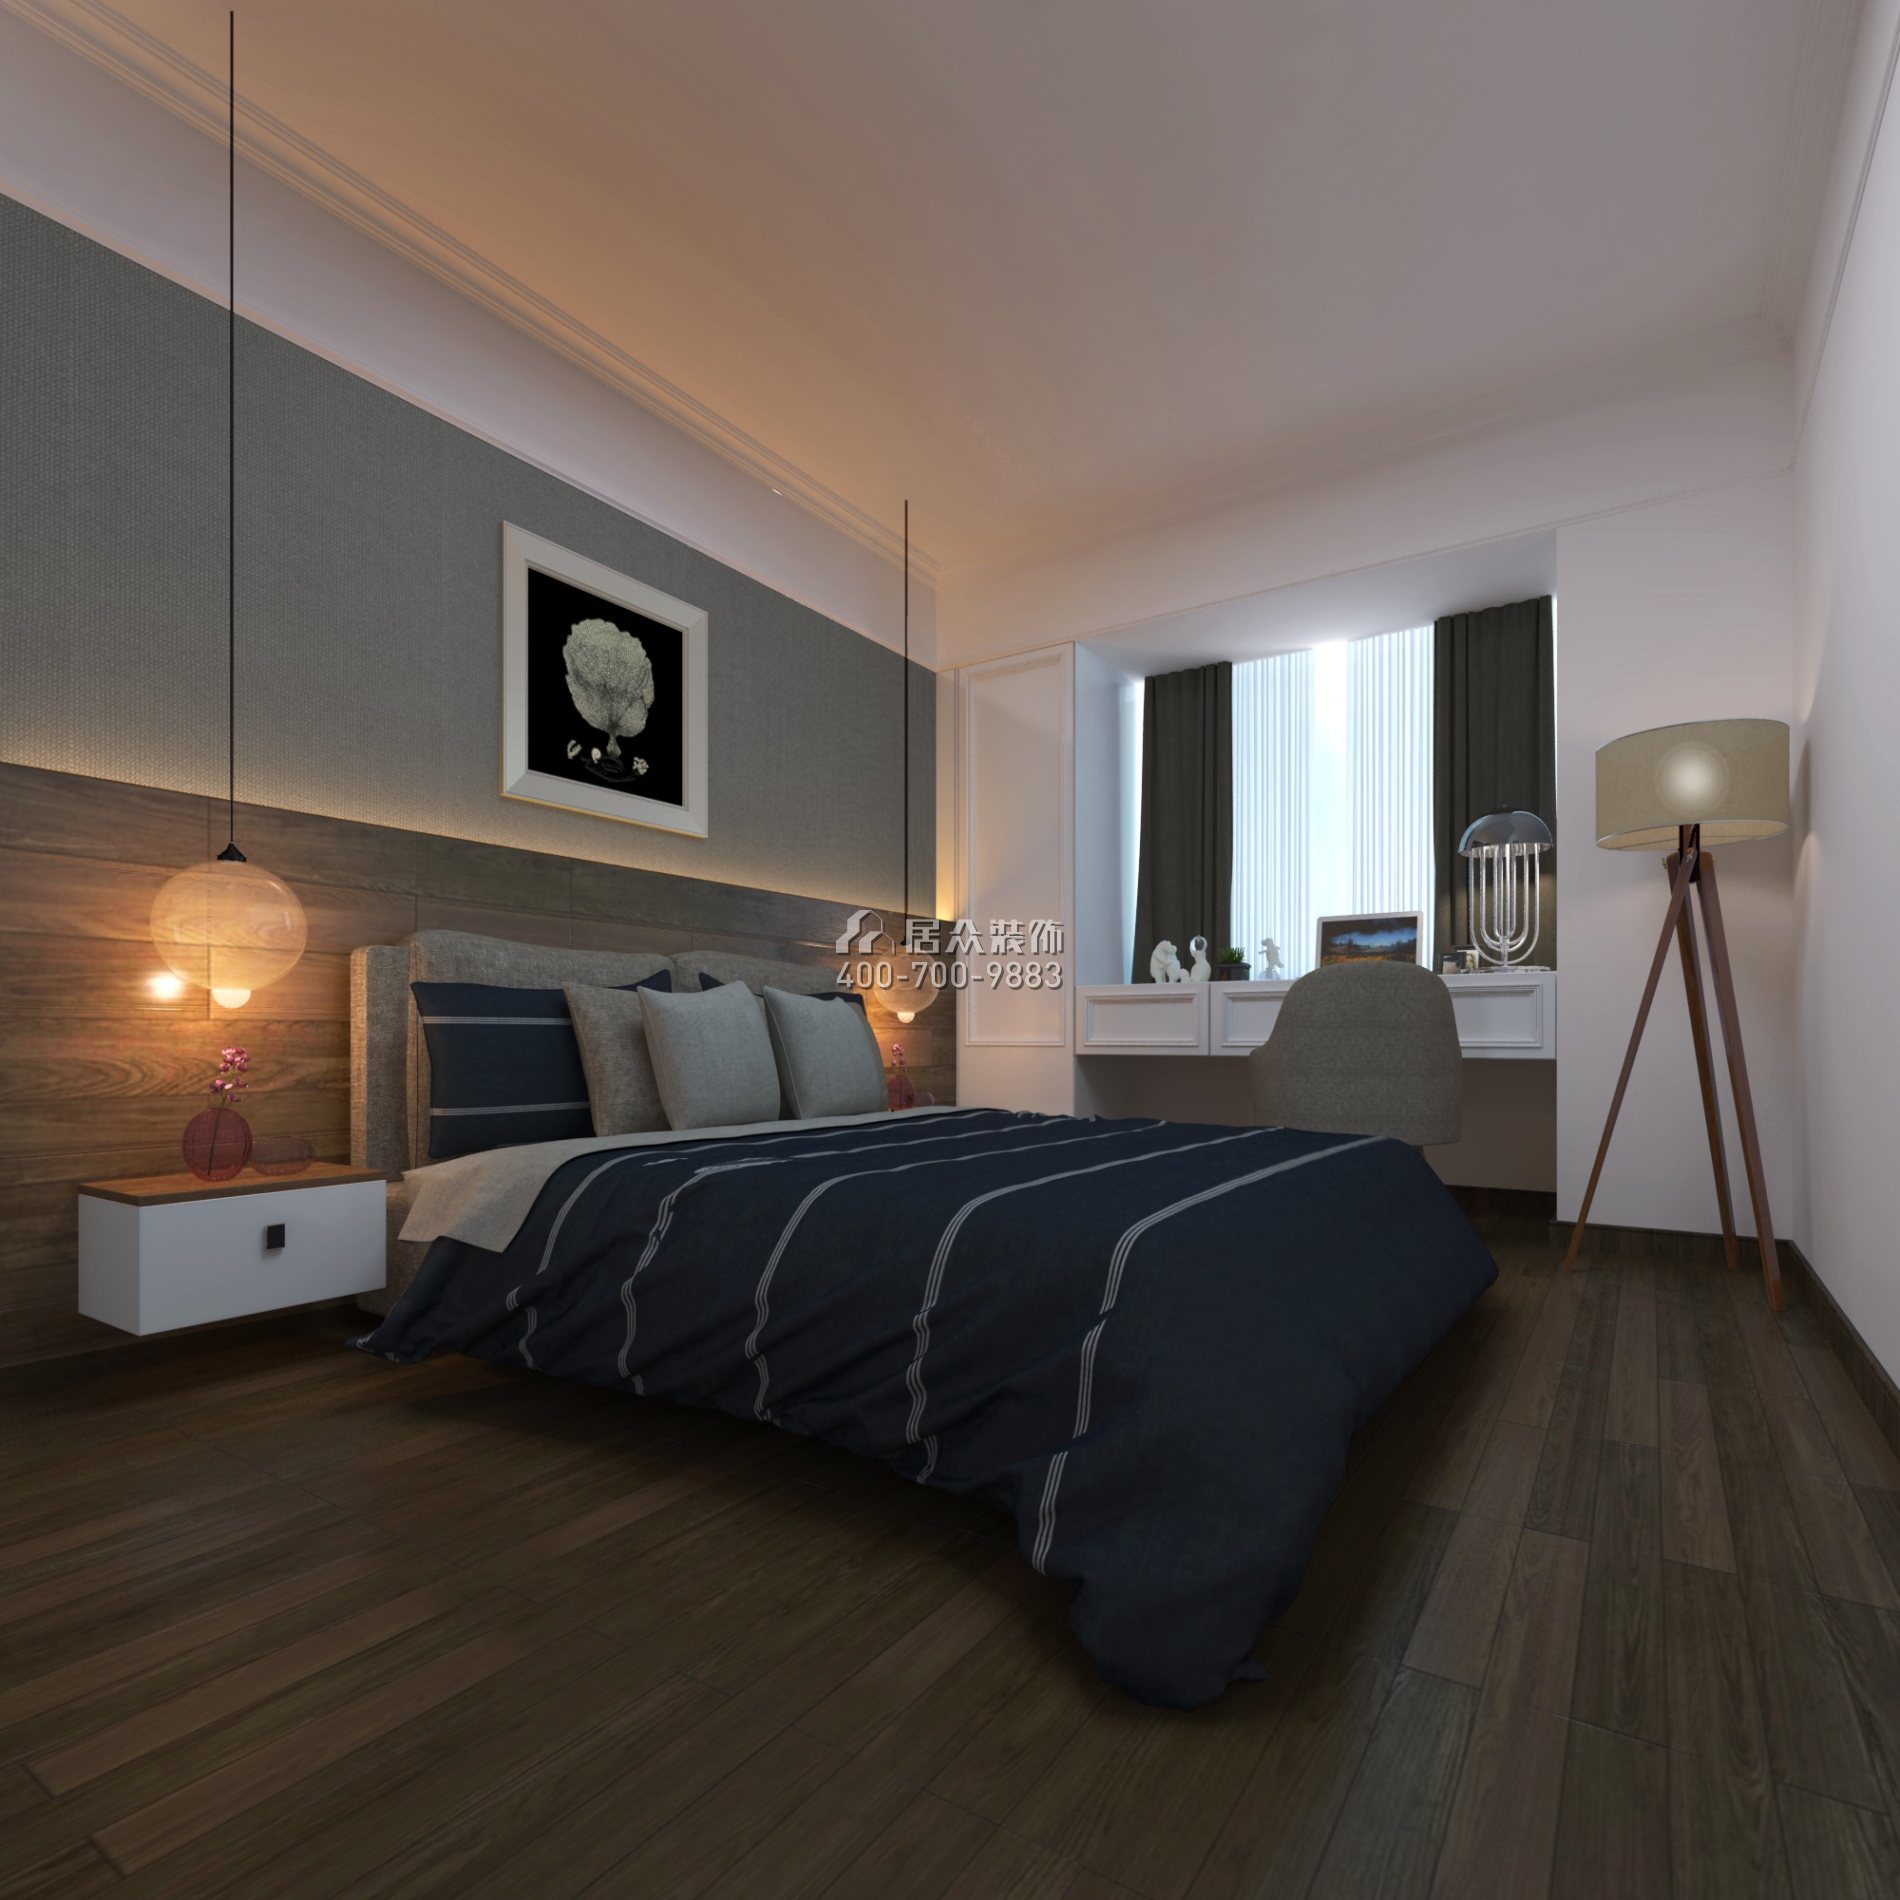 保利天匯128平方米現代簡約風格平層戶型臥室裝修效果圖